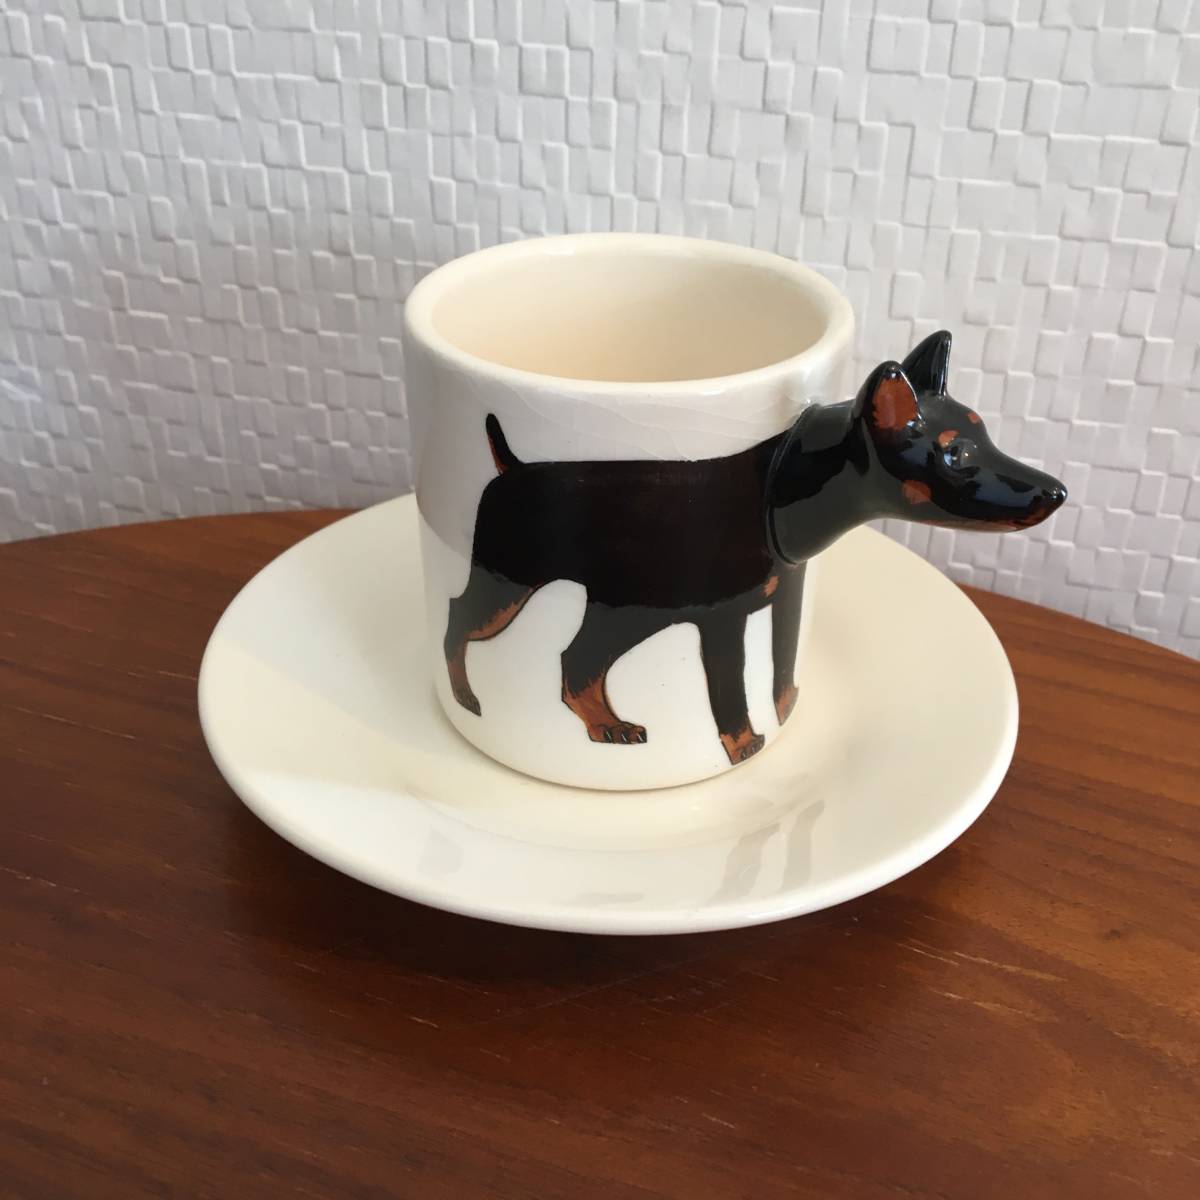 ドーベルマン|カップ&ソーサーセット 動物 3D 立体 コレクション 陶器 ハンドメイド 犬 ギフト コーヒーCUP エスプレッソ (新品)(即決), 茶器, カップ&ソーサー, コーヒーカップ